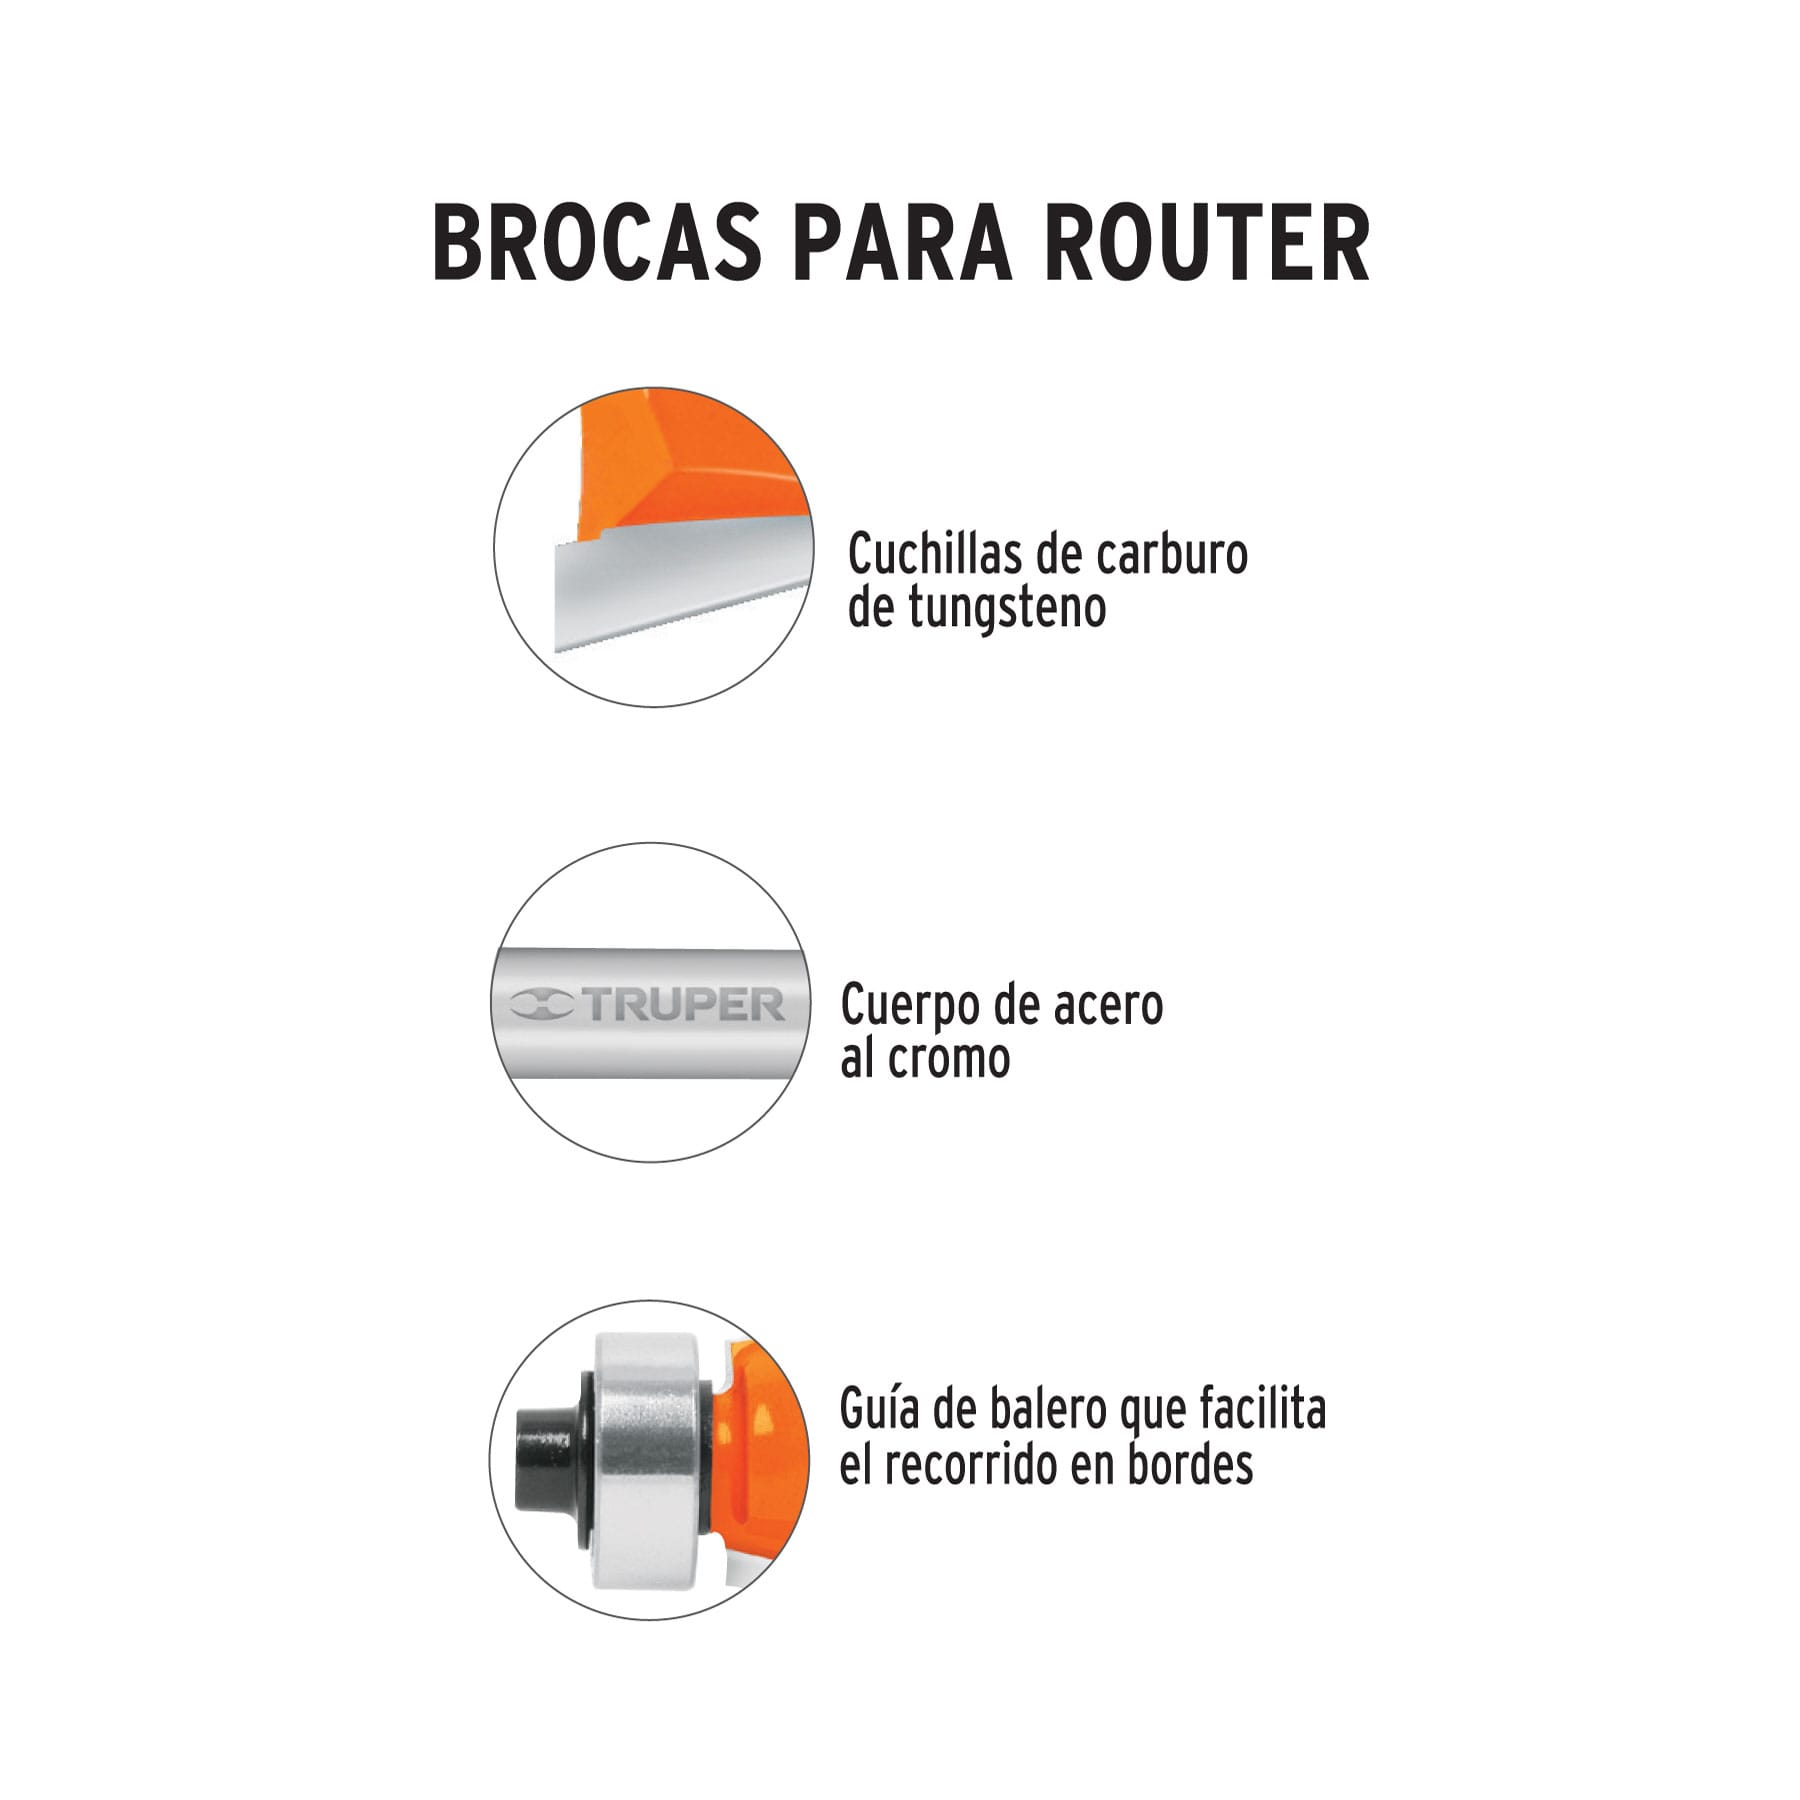 Broca Para Router, Bocel Cuarto, 1-1/8", Con Balero, Truper